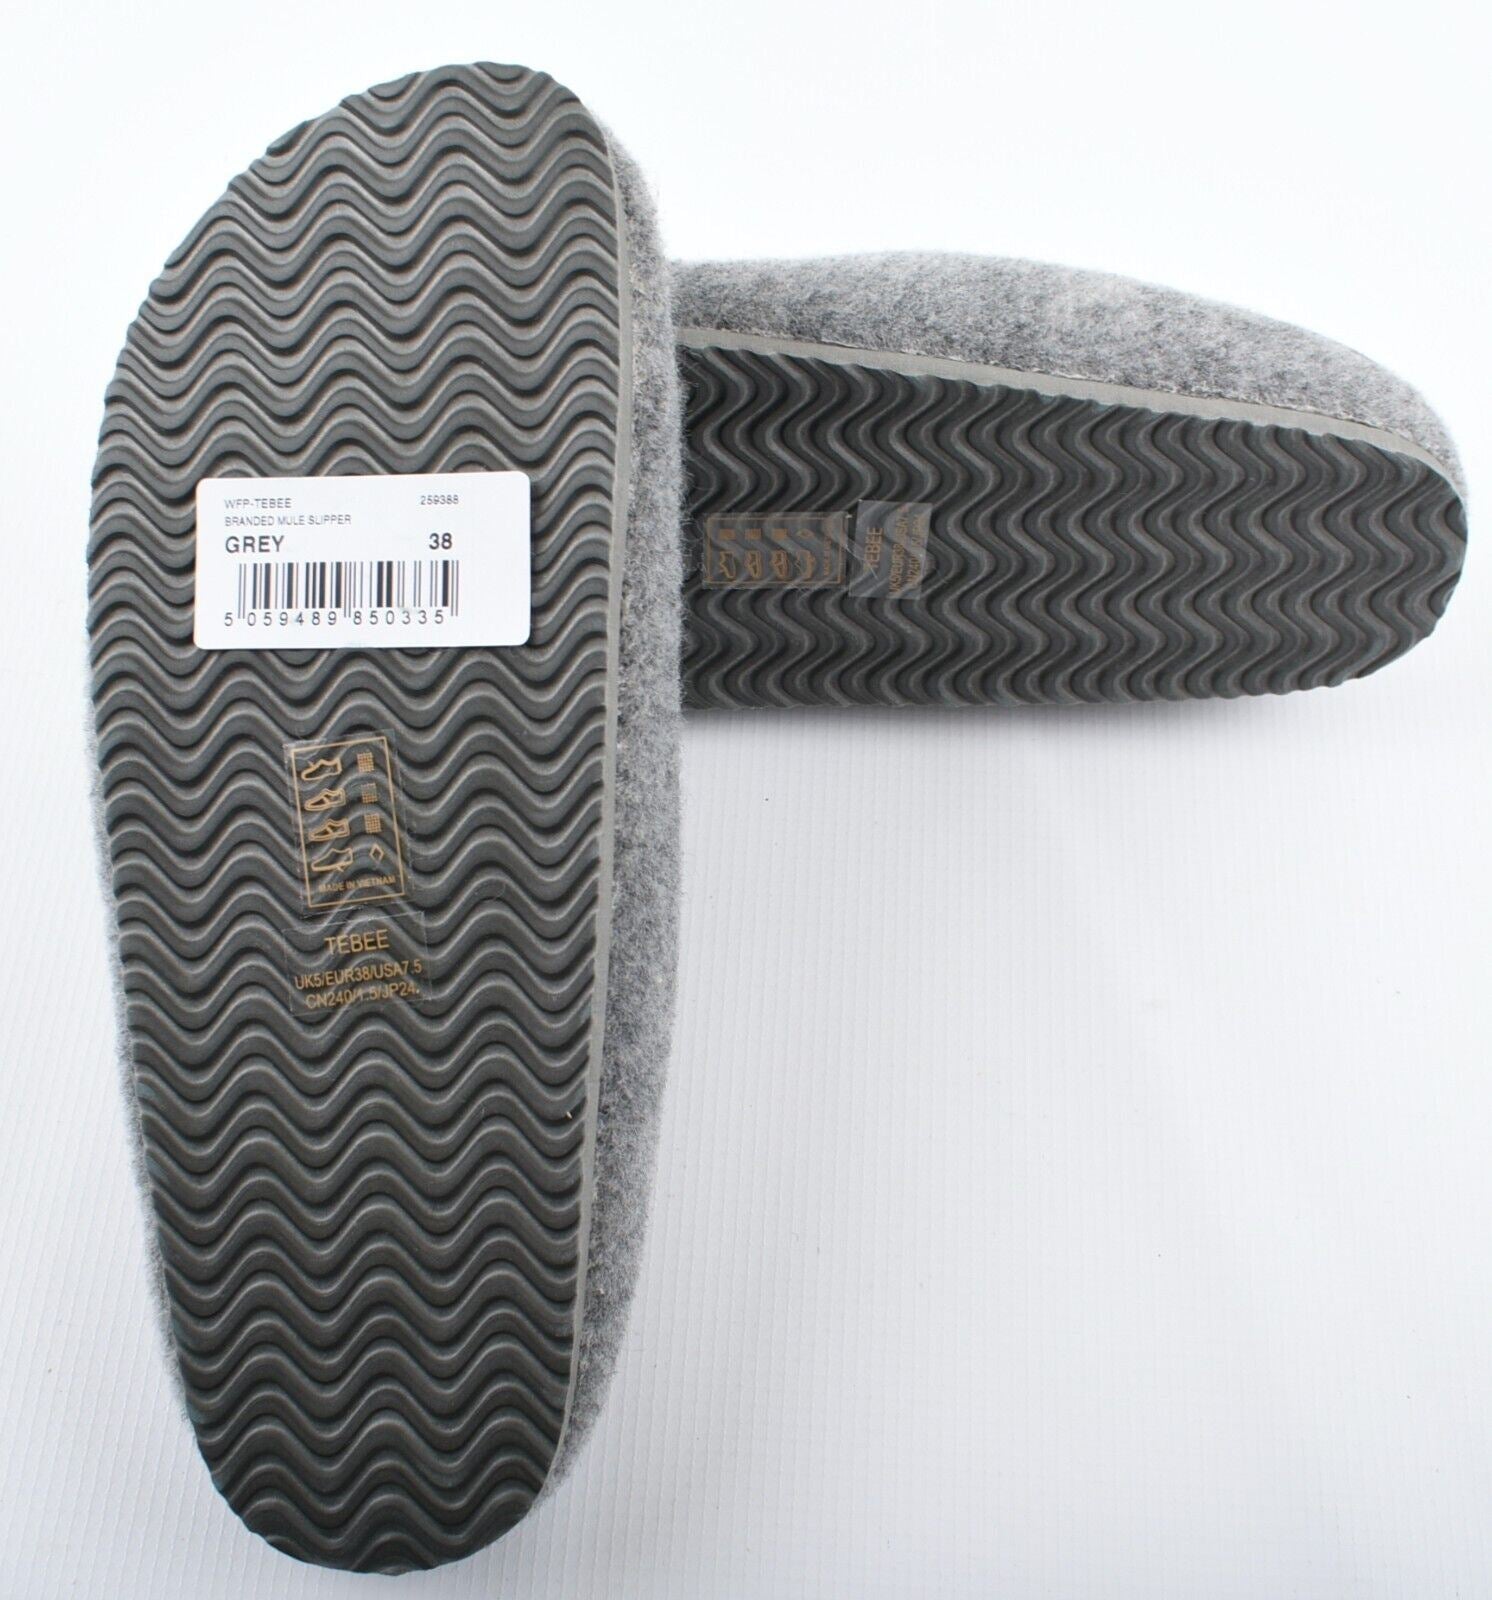 TED BAKER Women's TEBEE Branded Mule Slippers, Grey, size UK 6 / EU 39